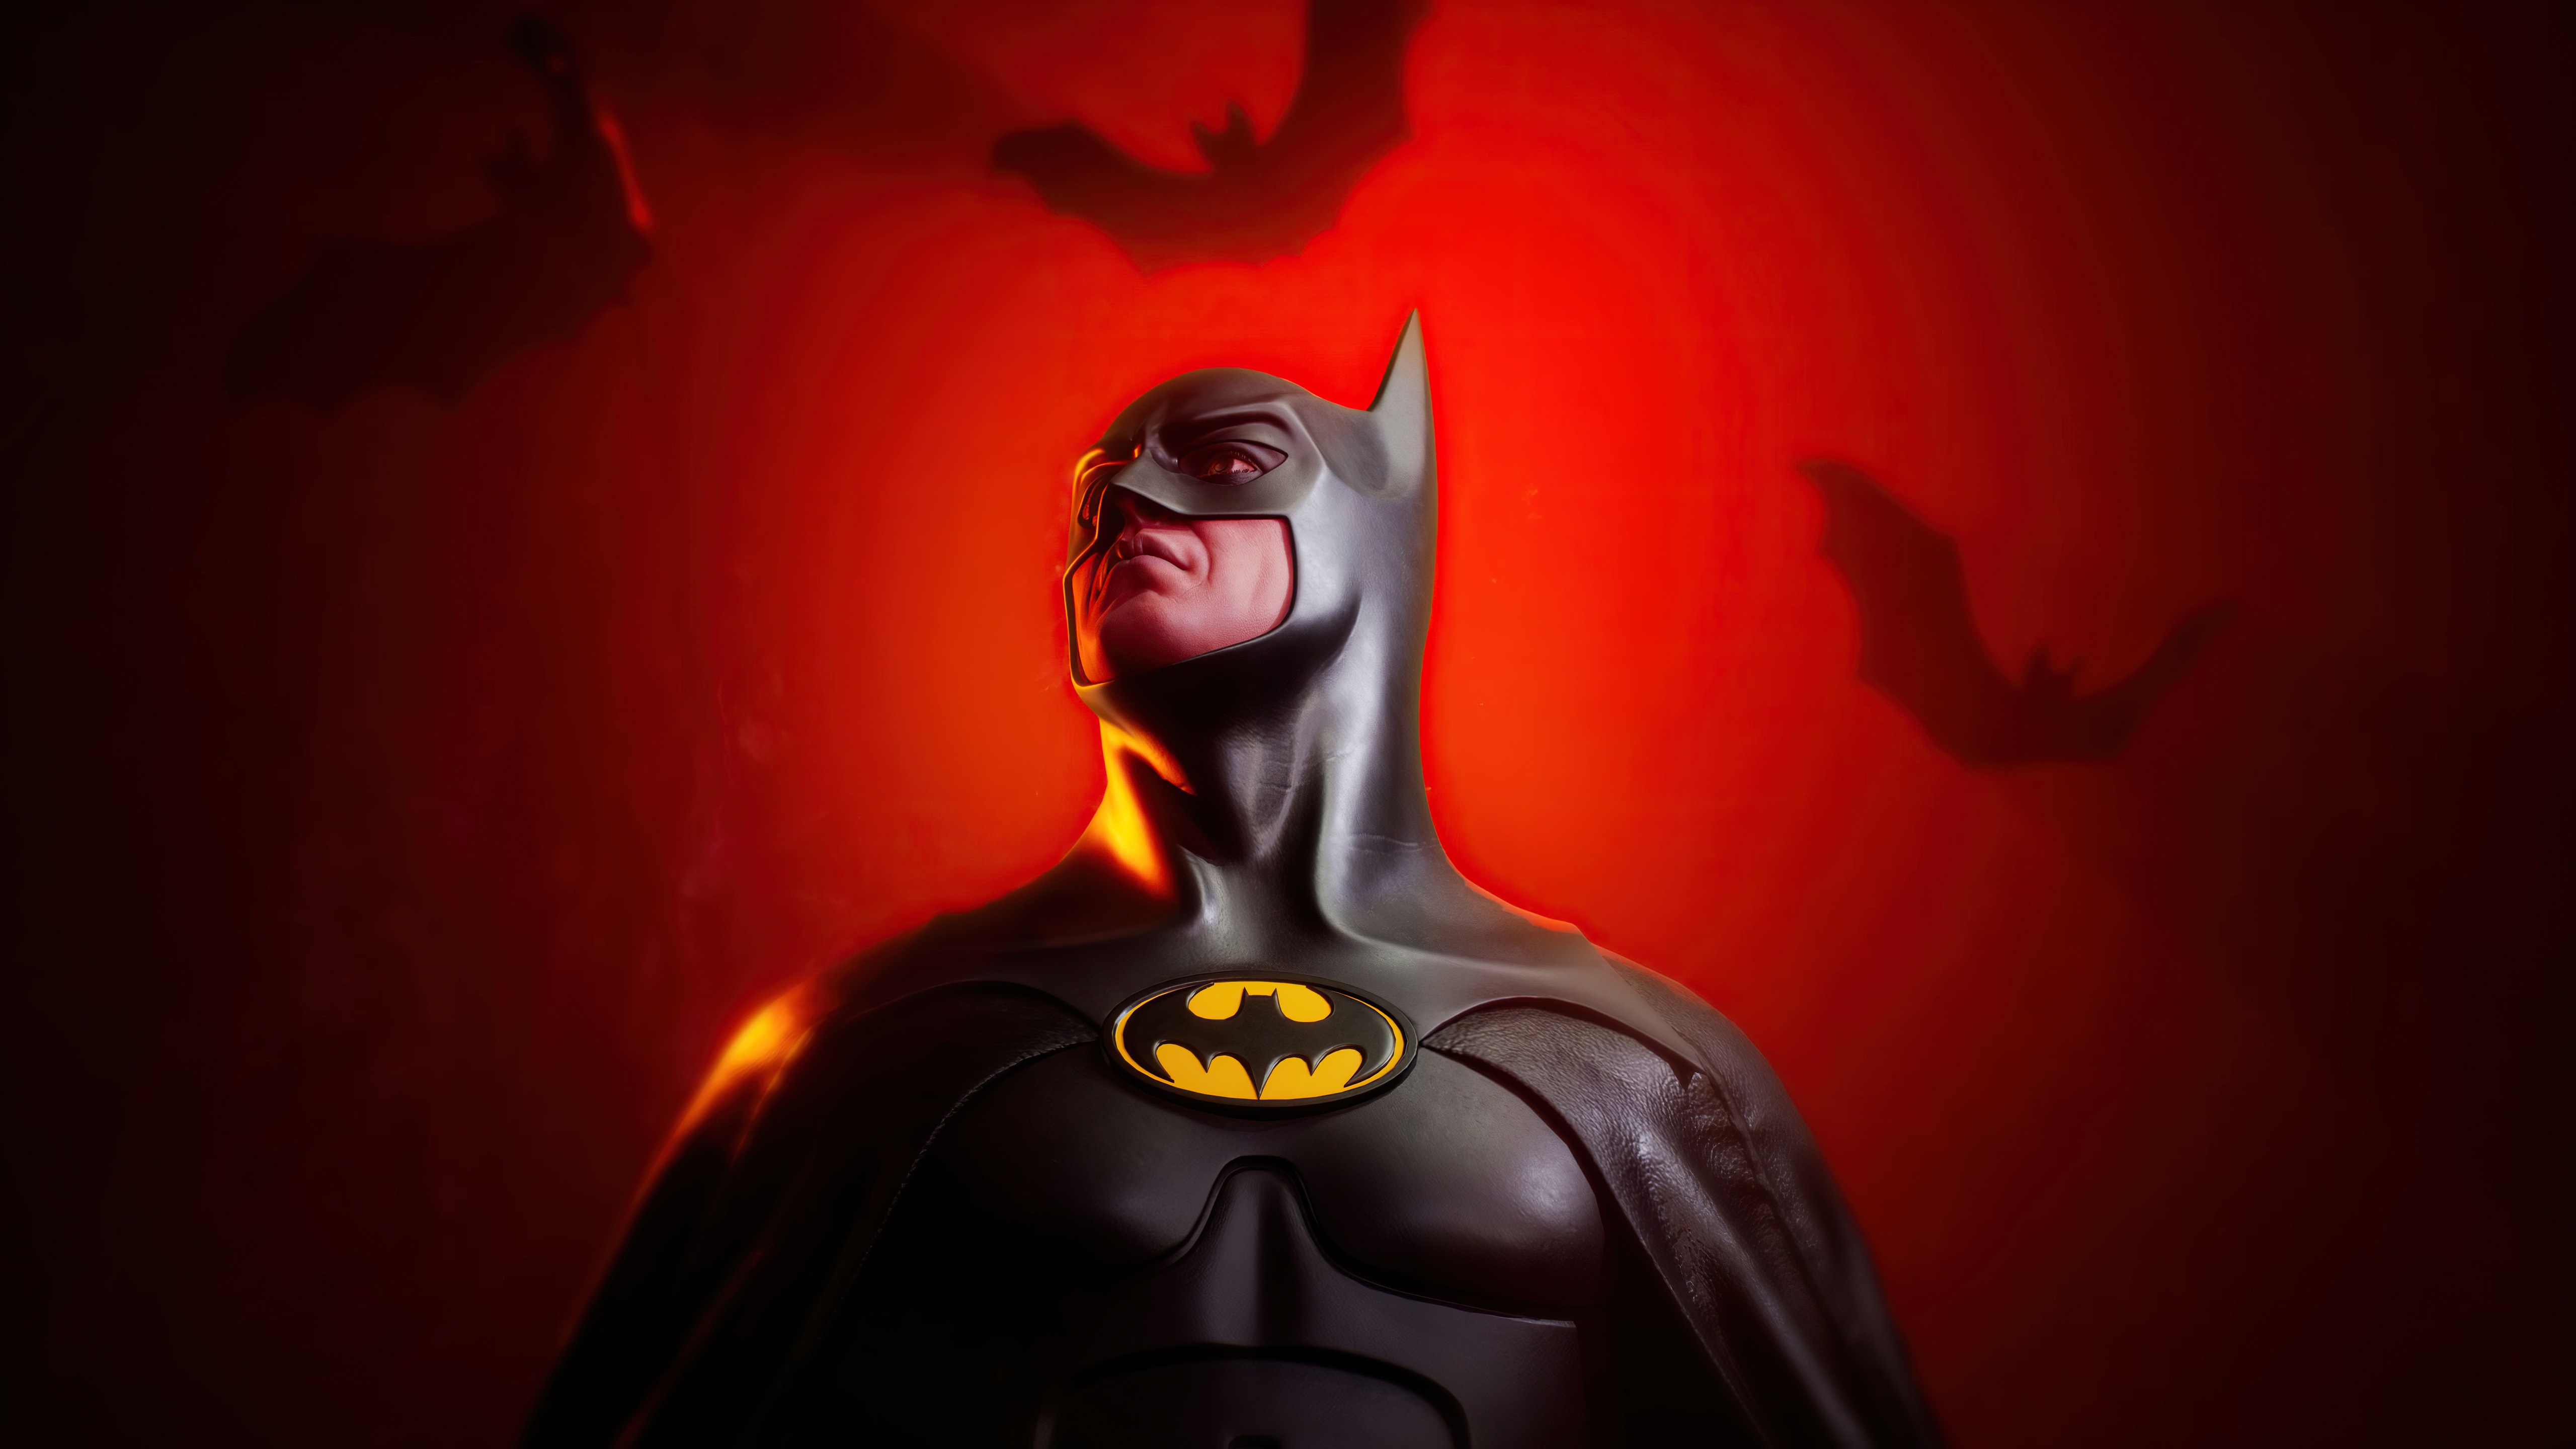 batman begins wallpaper hd 1080p